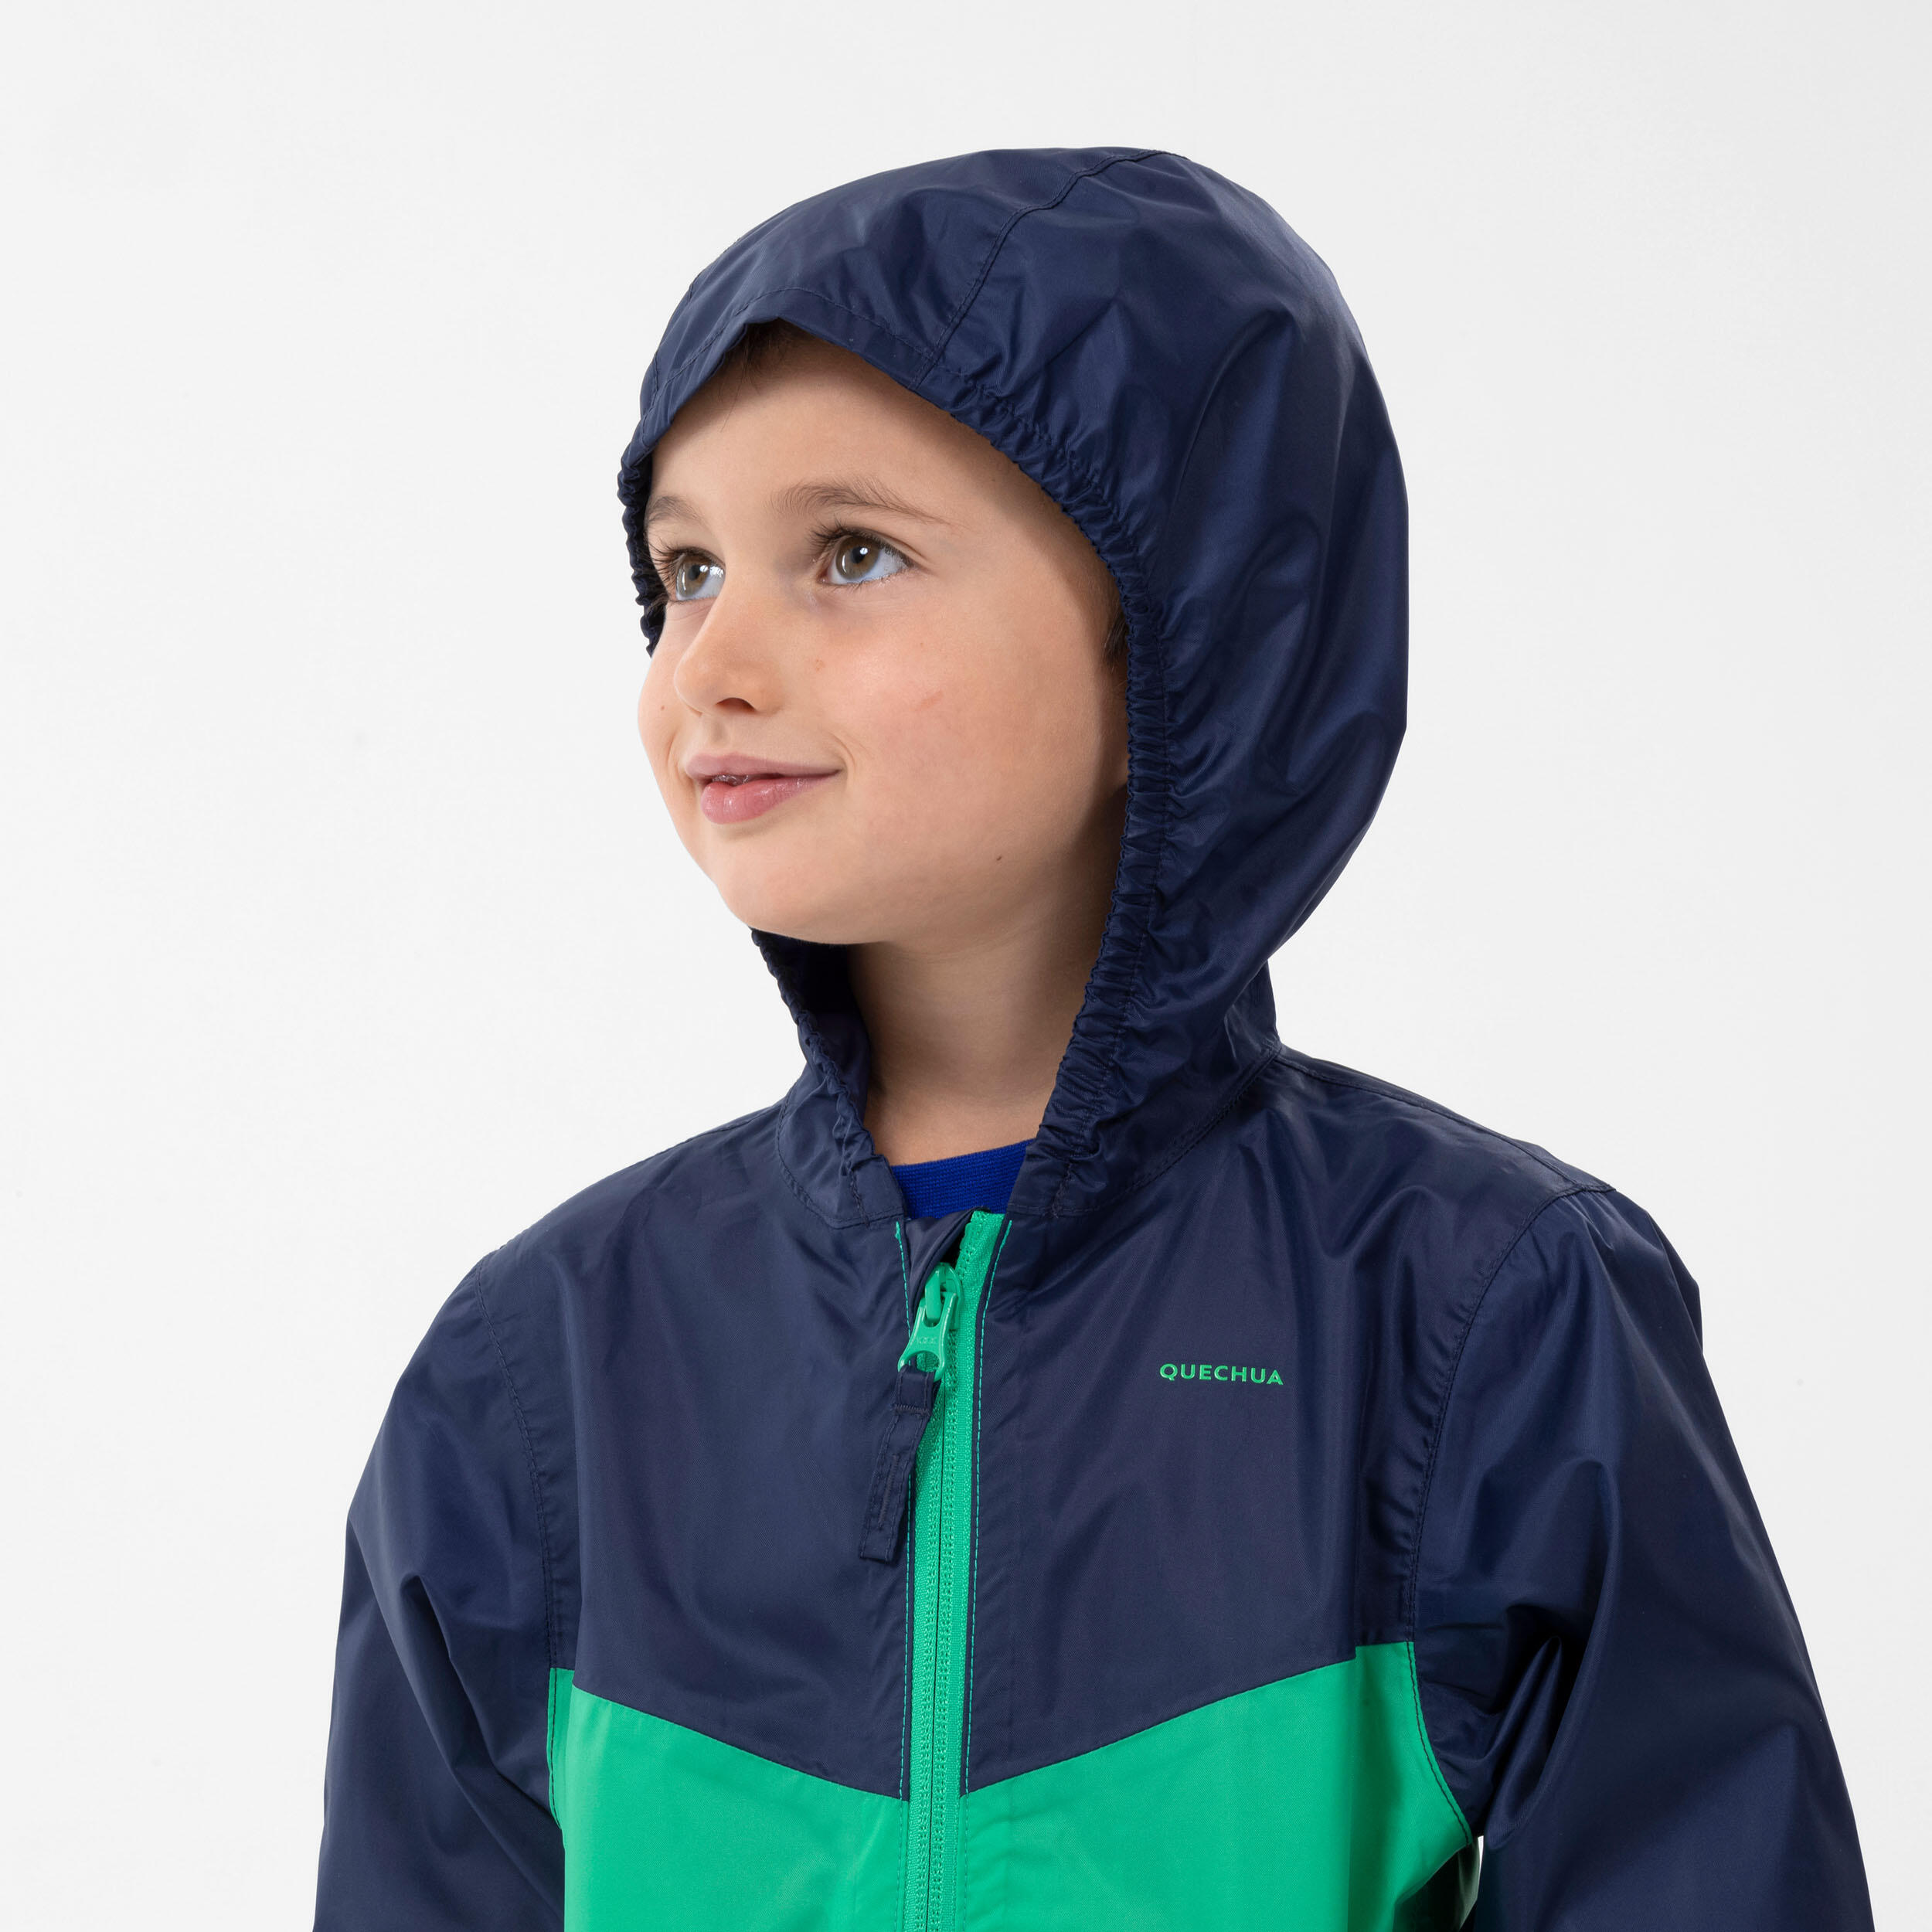 Kids’ Waterproof Hiking Jacket - MH100 Zip - Aged 2-6 6/8